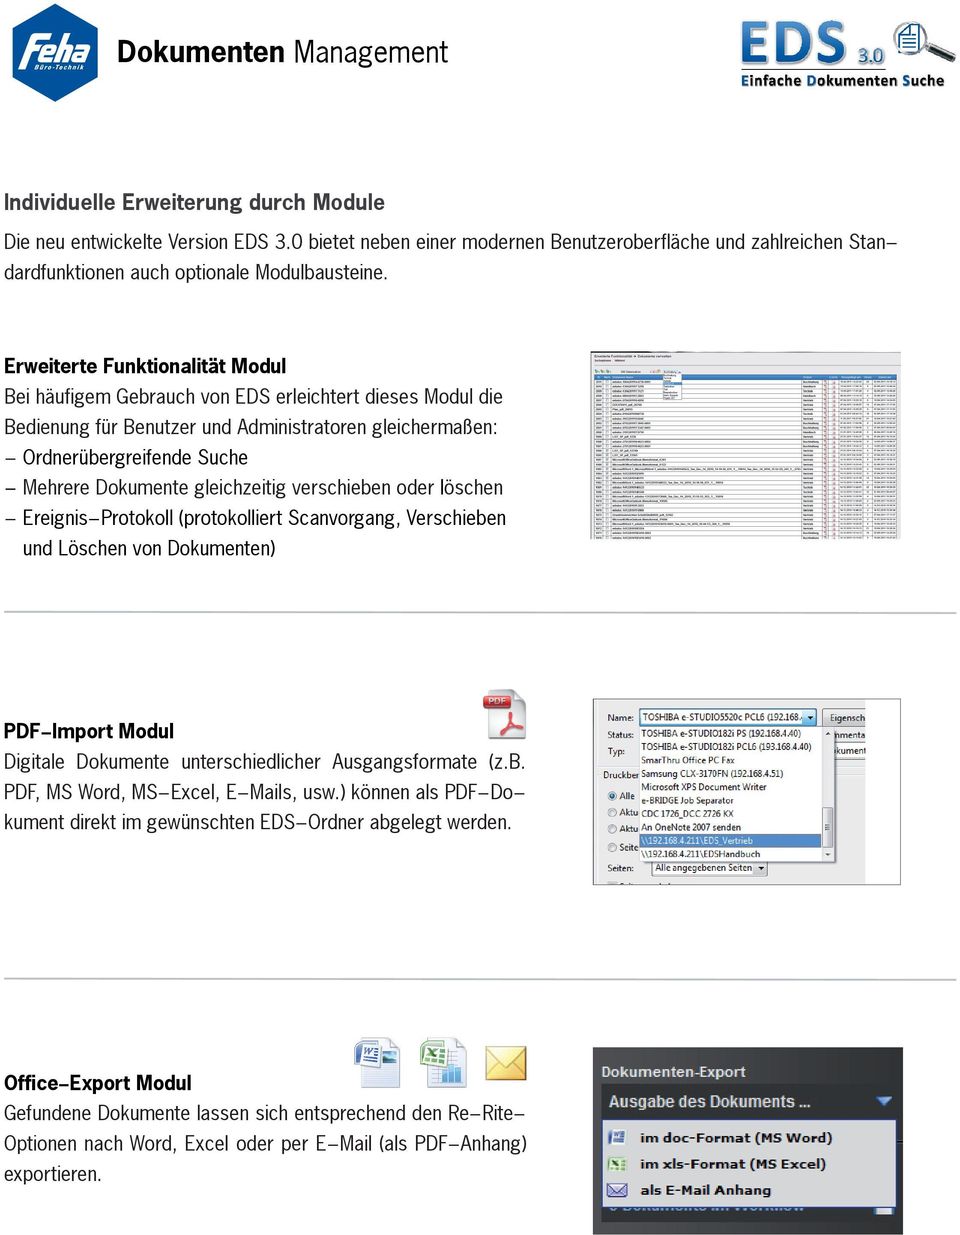 gleichzeitig verschieben oder löschen - Ereignis-Protokoll (protokolliert Scanvorgang, Verschieben - und Löschen von Dokumenten) PDF-Import Modul Digitale Dokumente unterschiedlicher Ausgangsformate